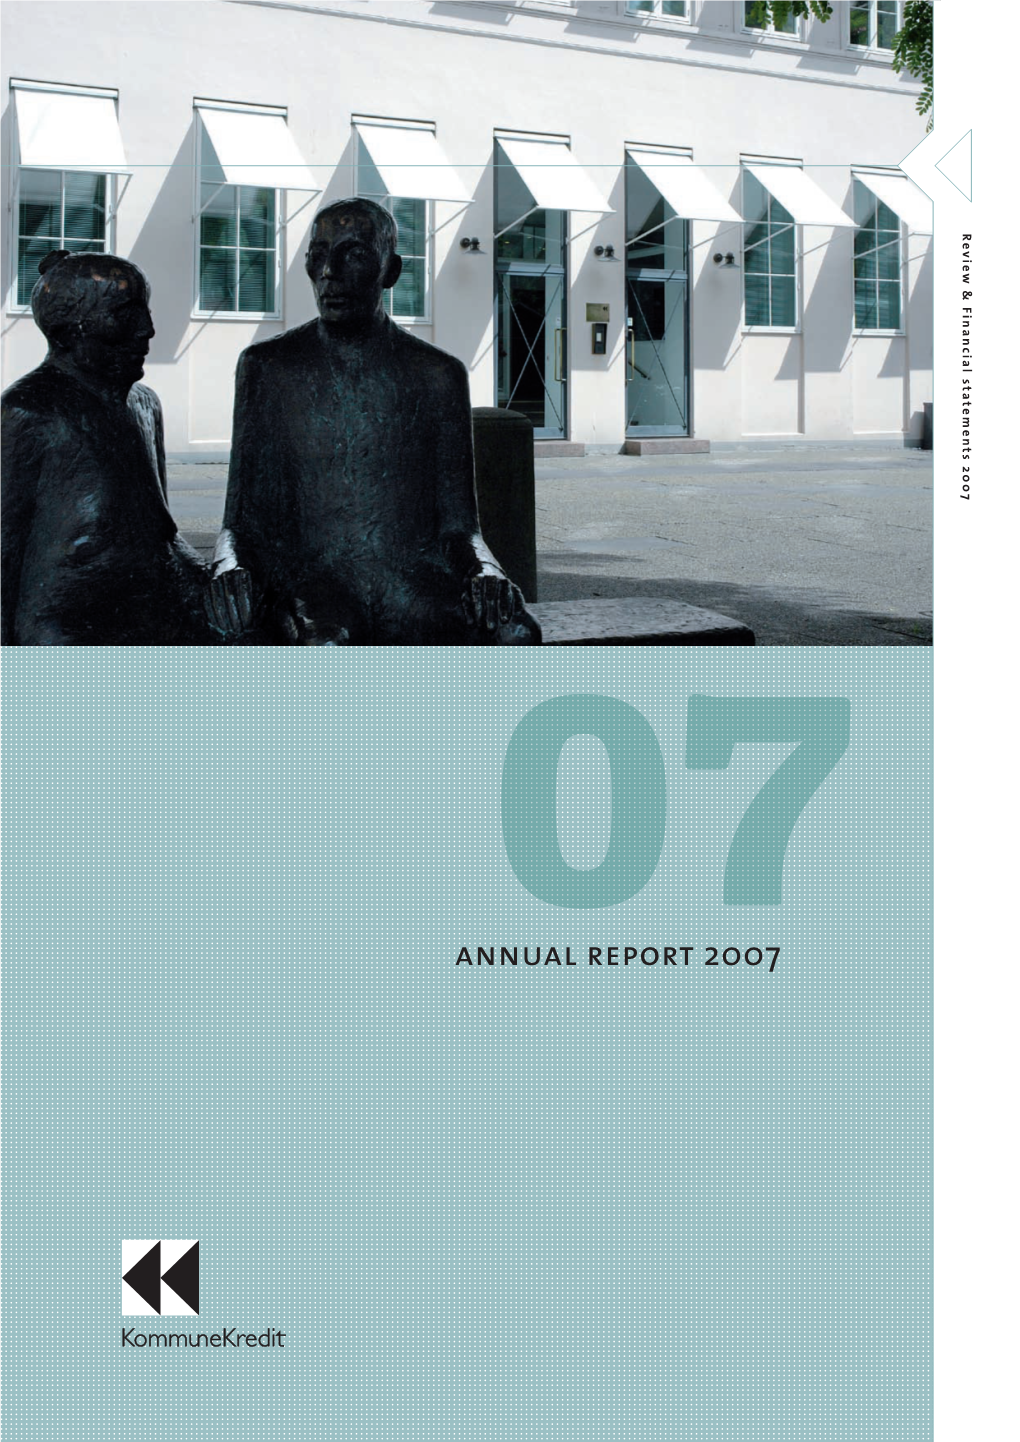 Annual Report 2007 Report Annual 2